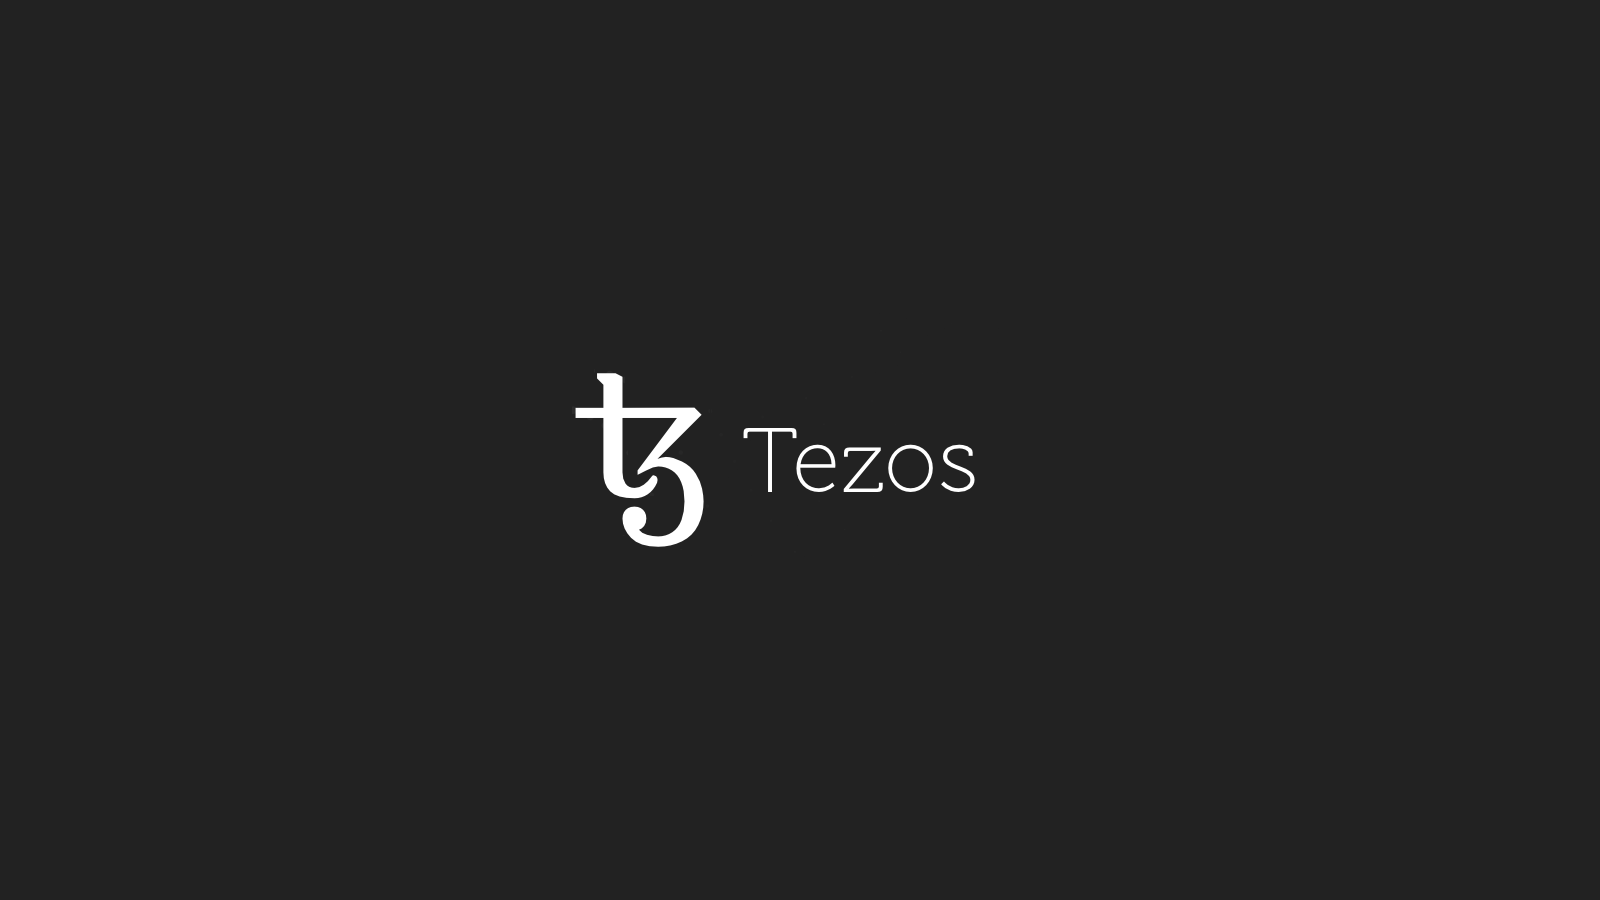 Denna forskningsrapport kommer att presentera 21Shares investeringsuppsats för Tezos (XTZ) kryptotillgång.